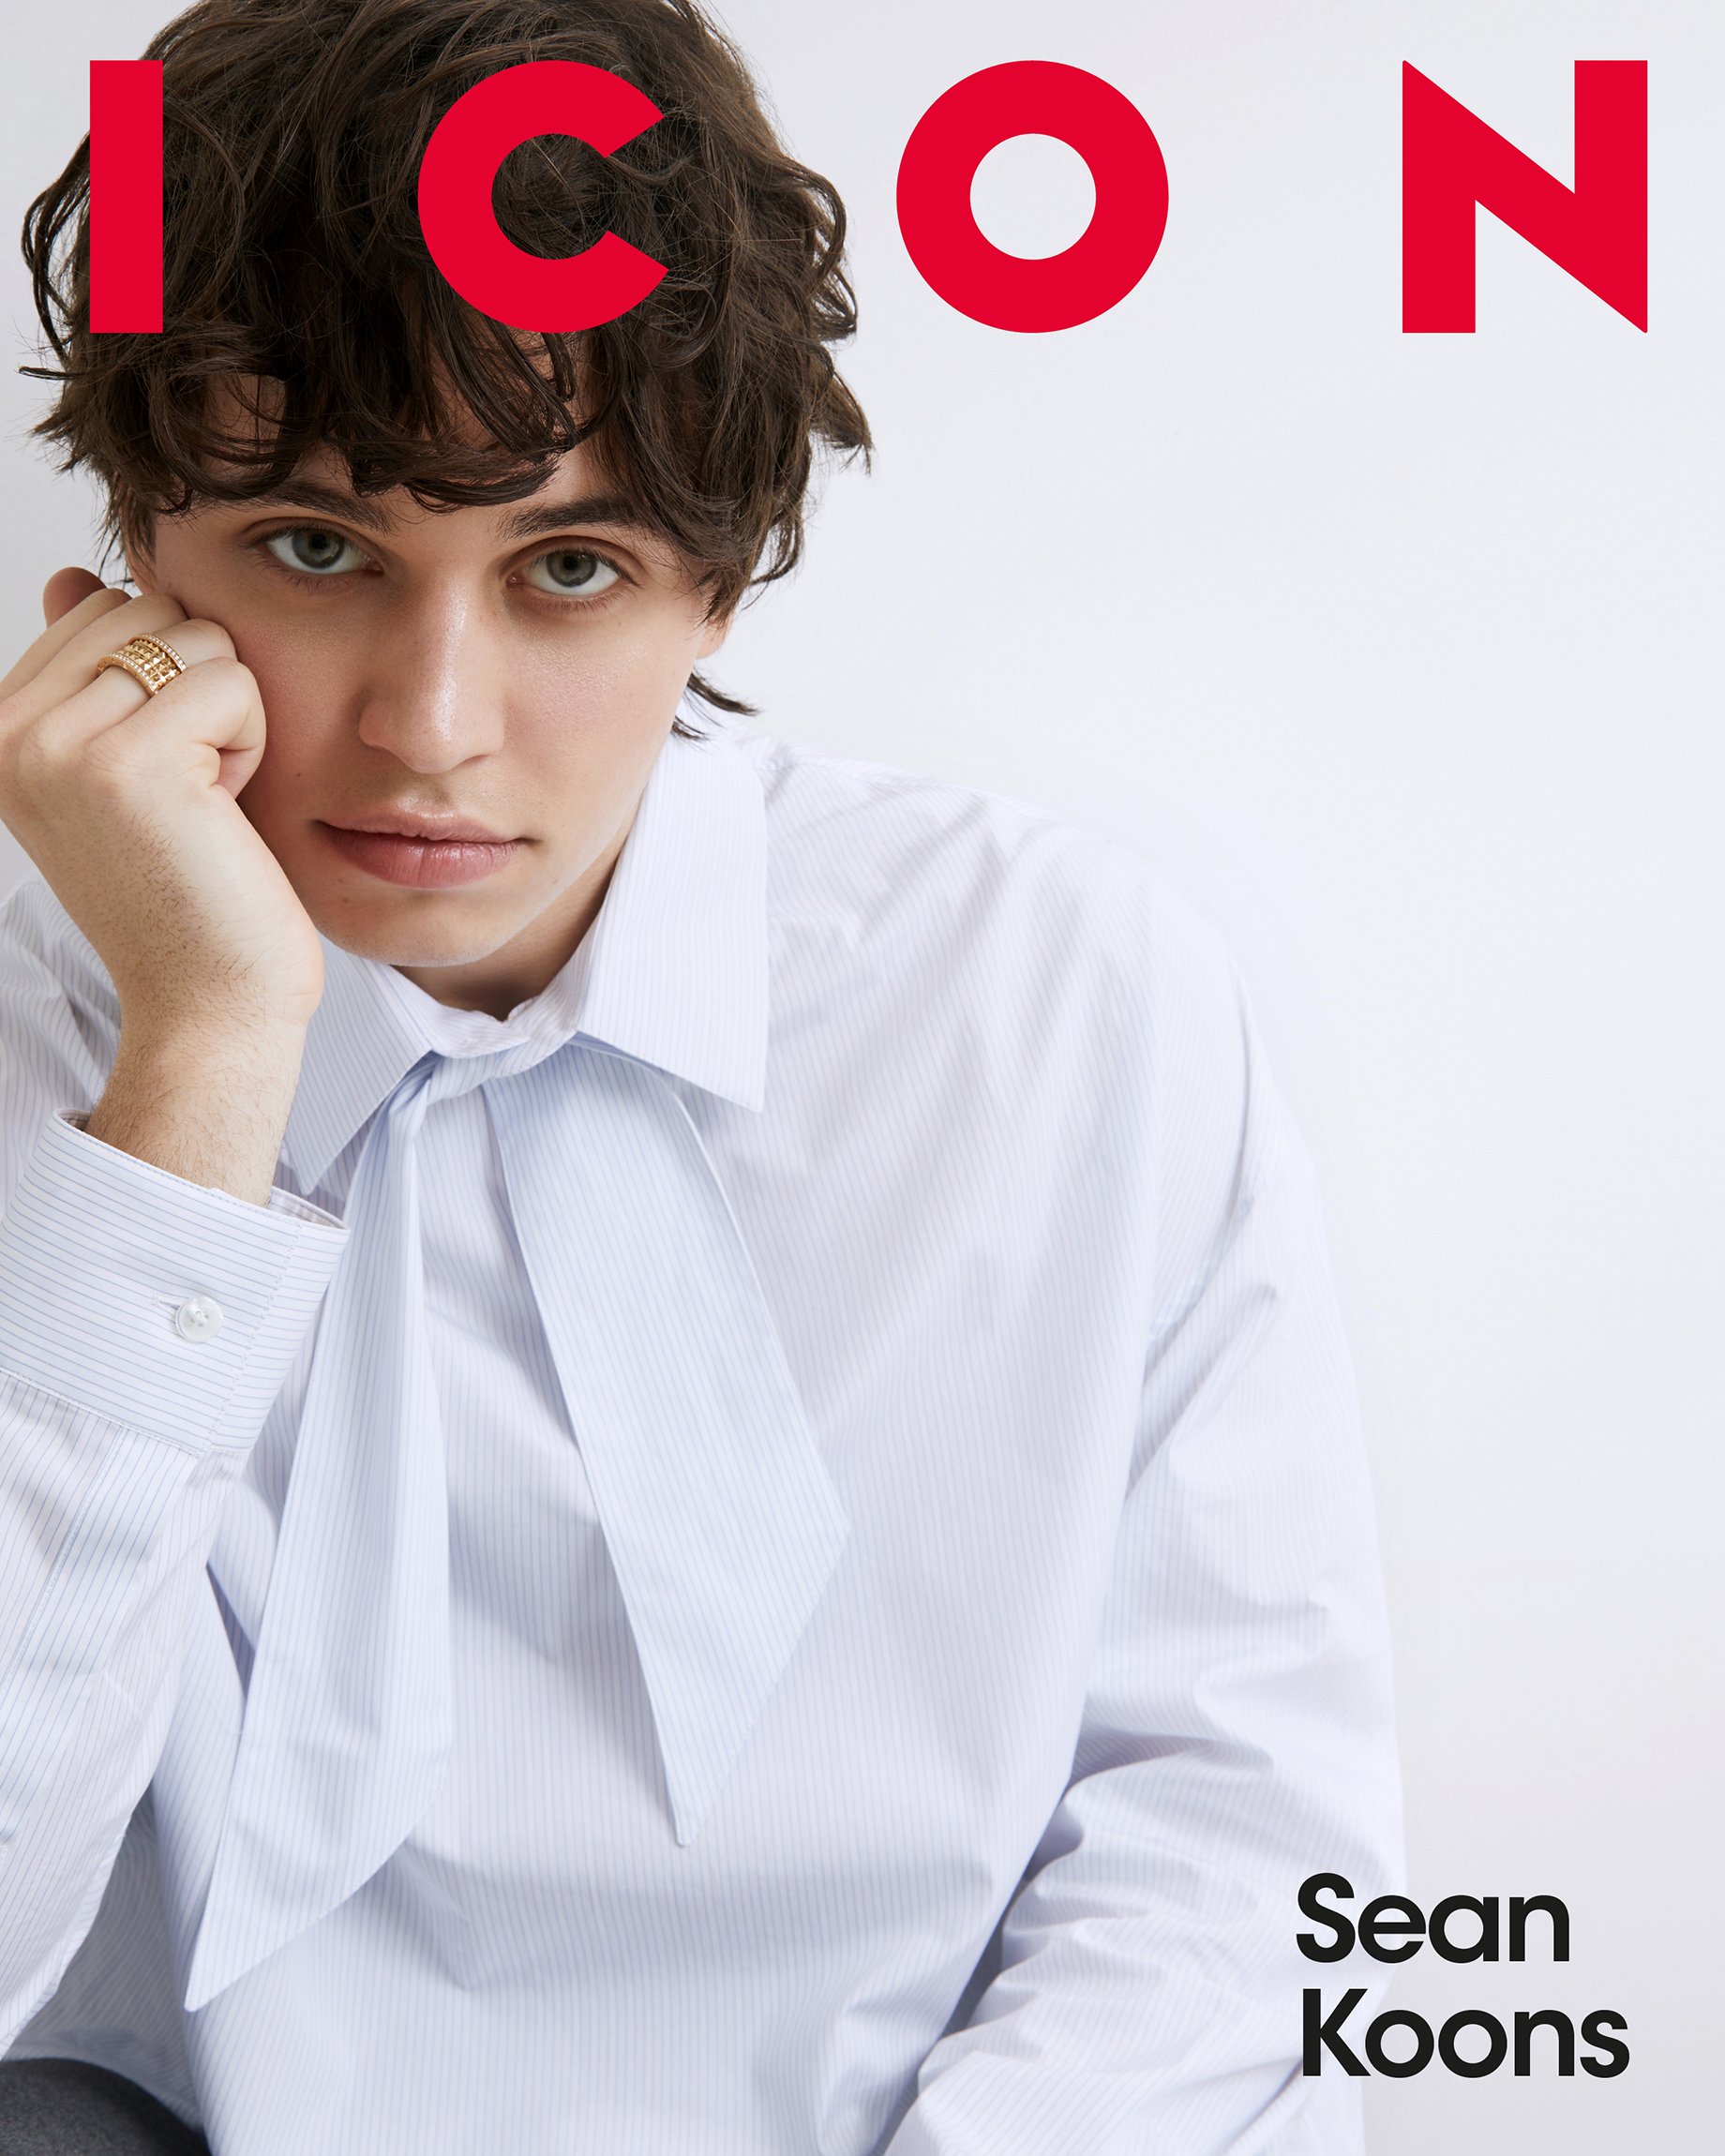 ICON - Sean Koons